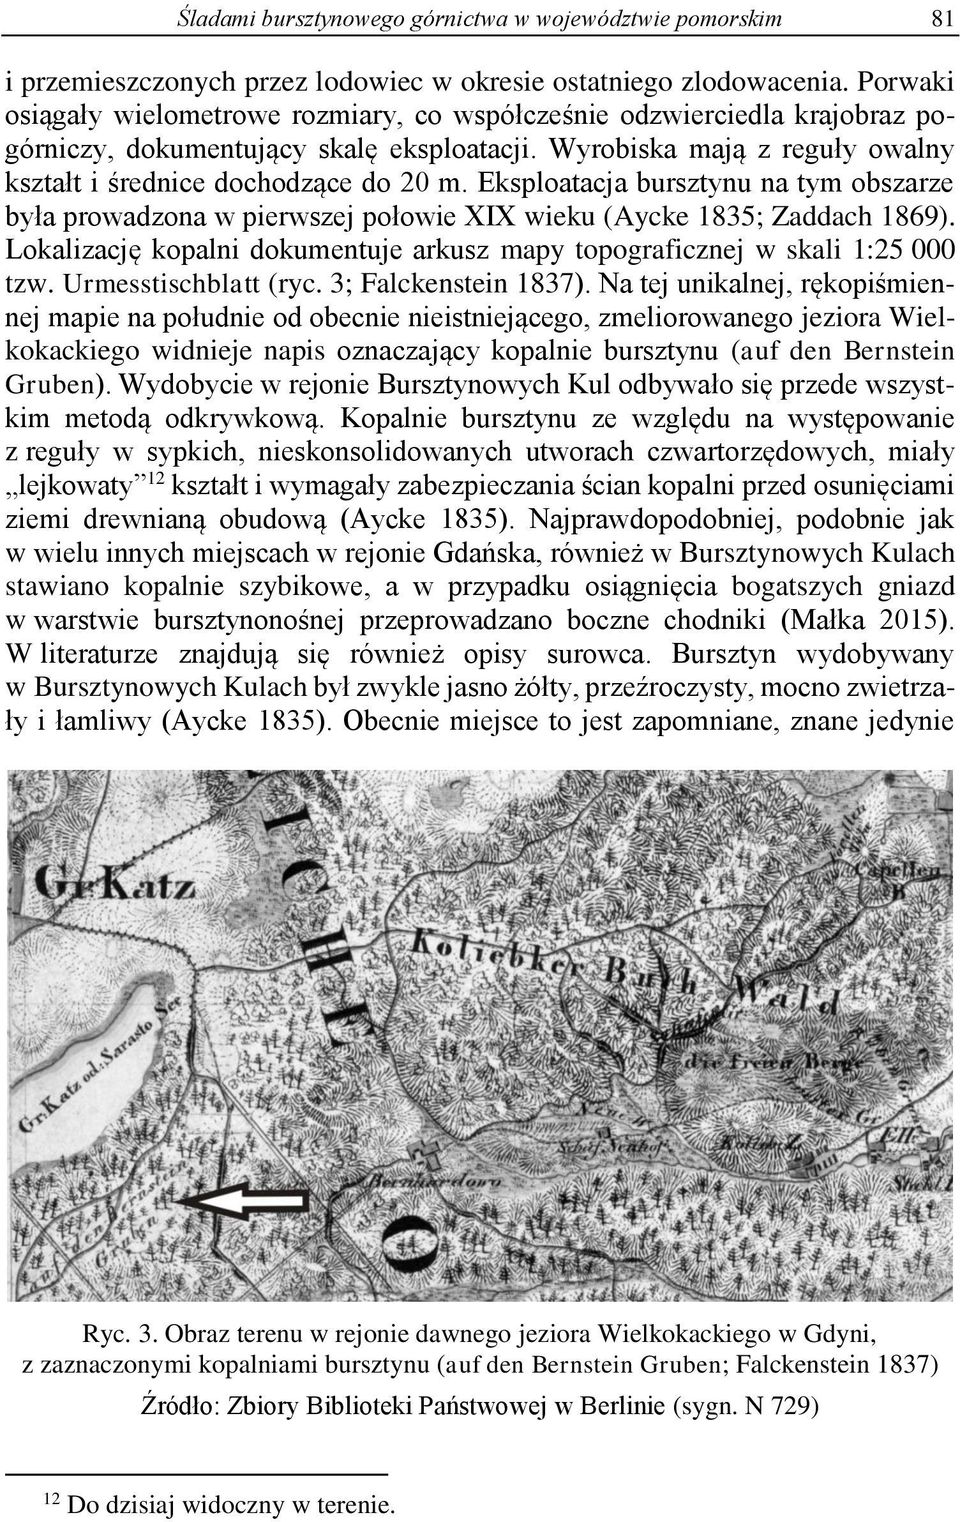 Eksploatacja bursztynu na tym obszarze była prowadzona w pierwszej połowie XIX wieku (Aycke 1835; Zaddach 1869). Lokalizację kopalni dokumentuje arkusz mapy topograficznej w skali 1:25 000 tzw.